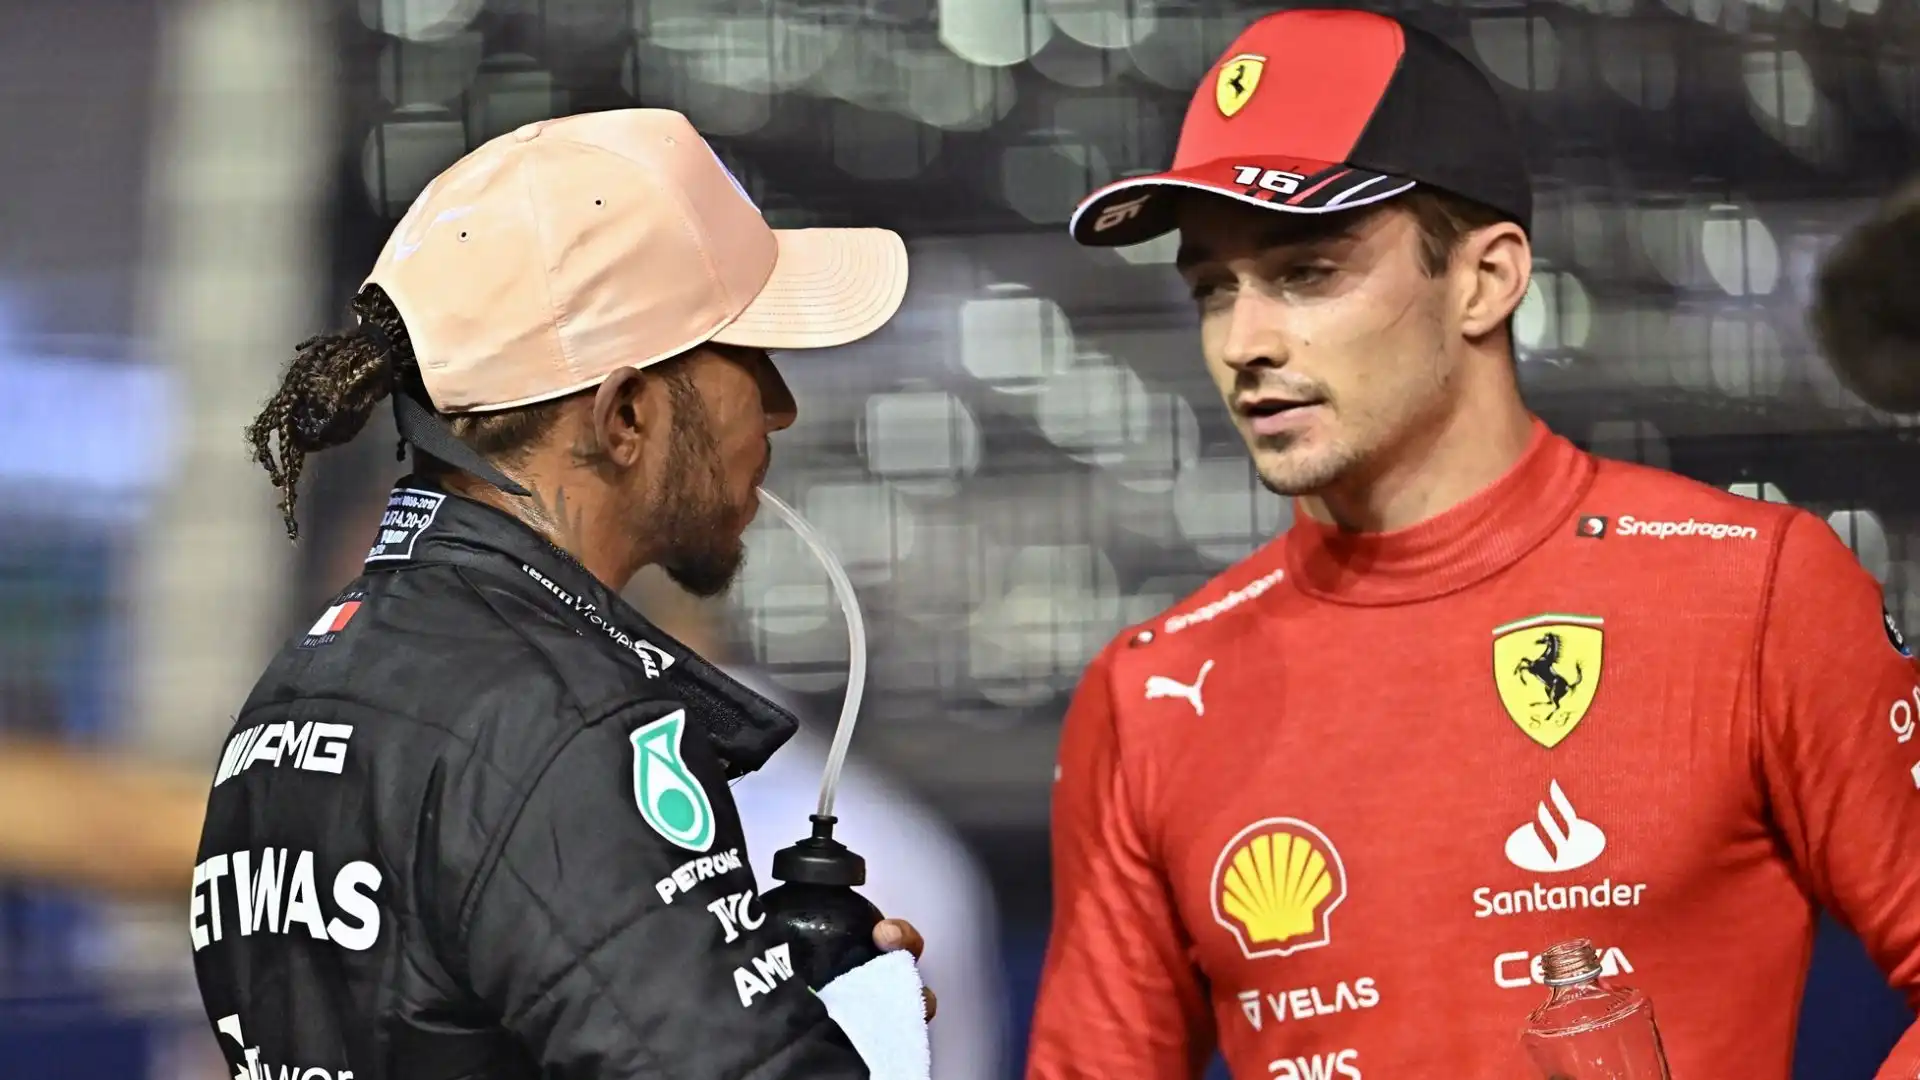 L'arrivo di Lewis Hamilton in Ferrari ha scioccato tanti, e tra questi anche lo stesso Charles Leclerc, almeno secondo alcune indiscrezioni